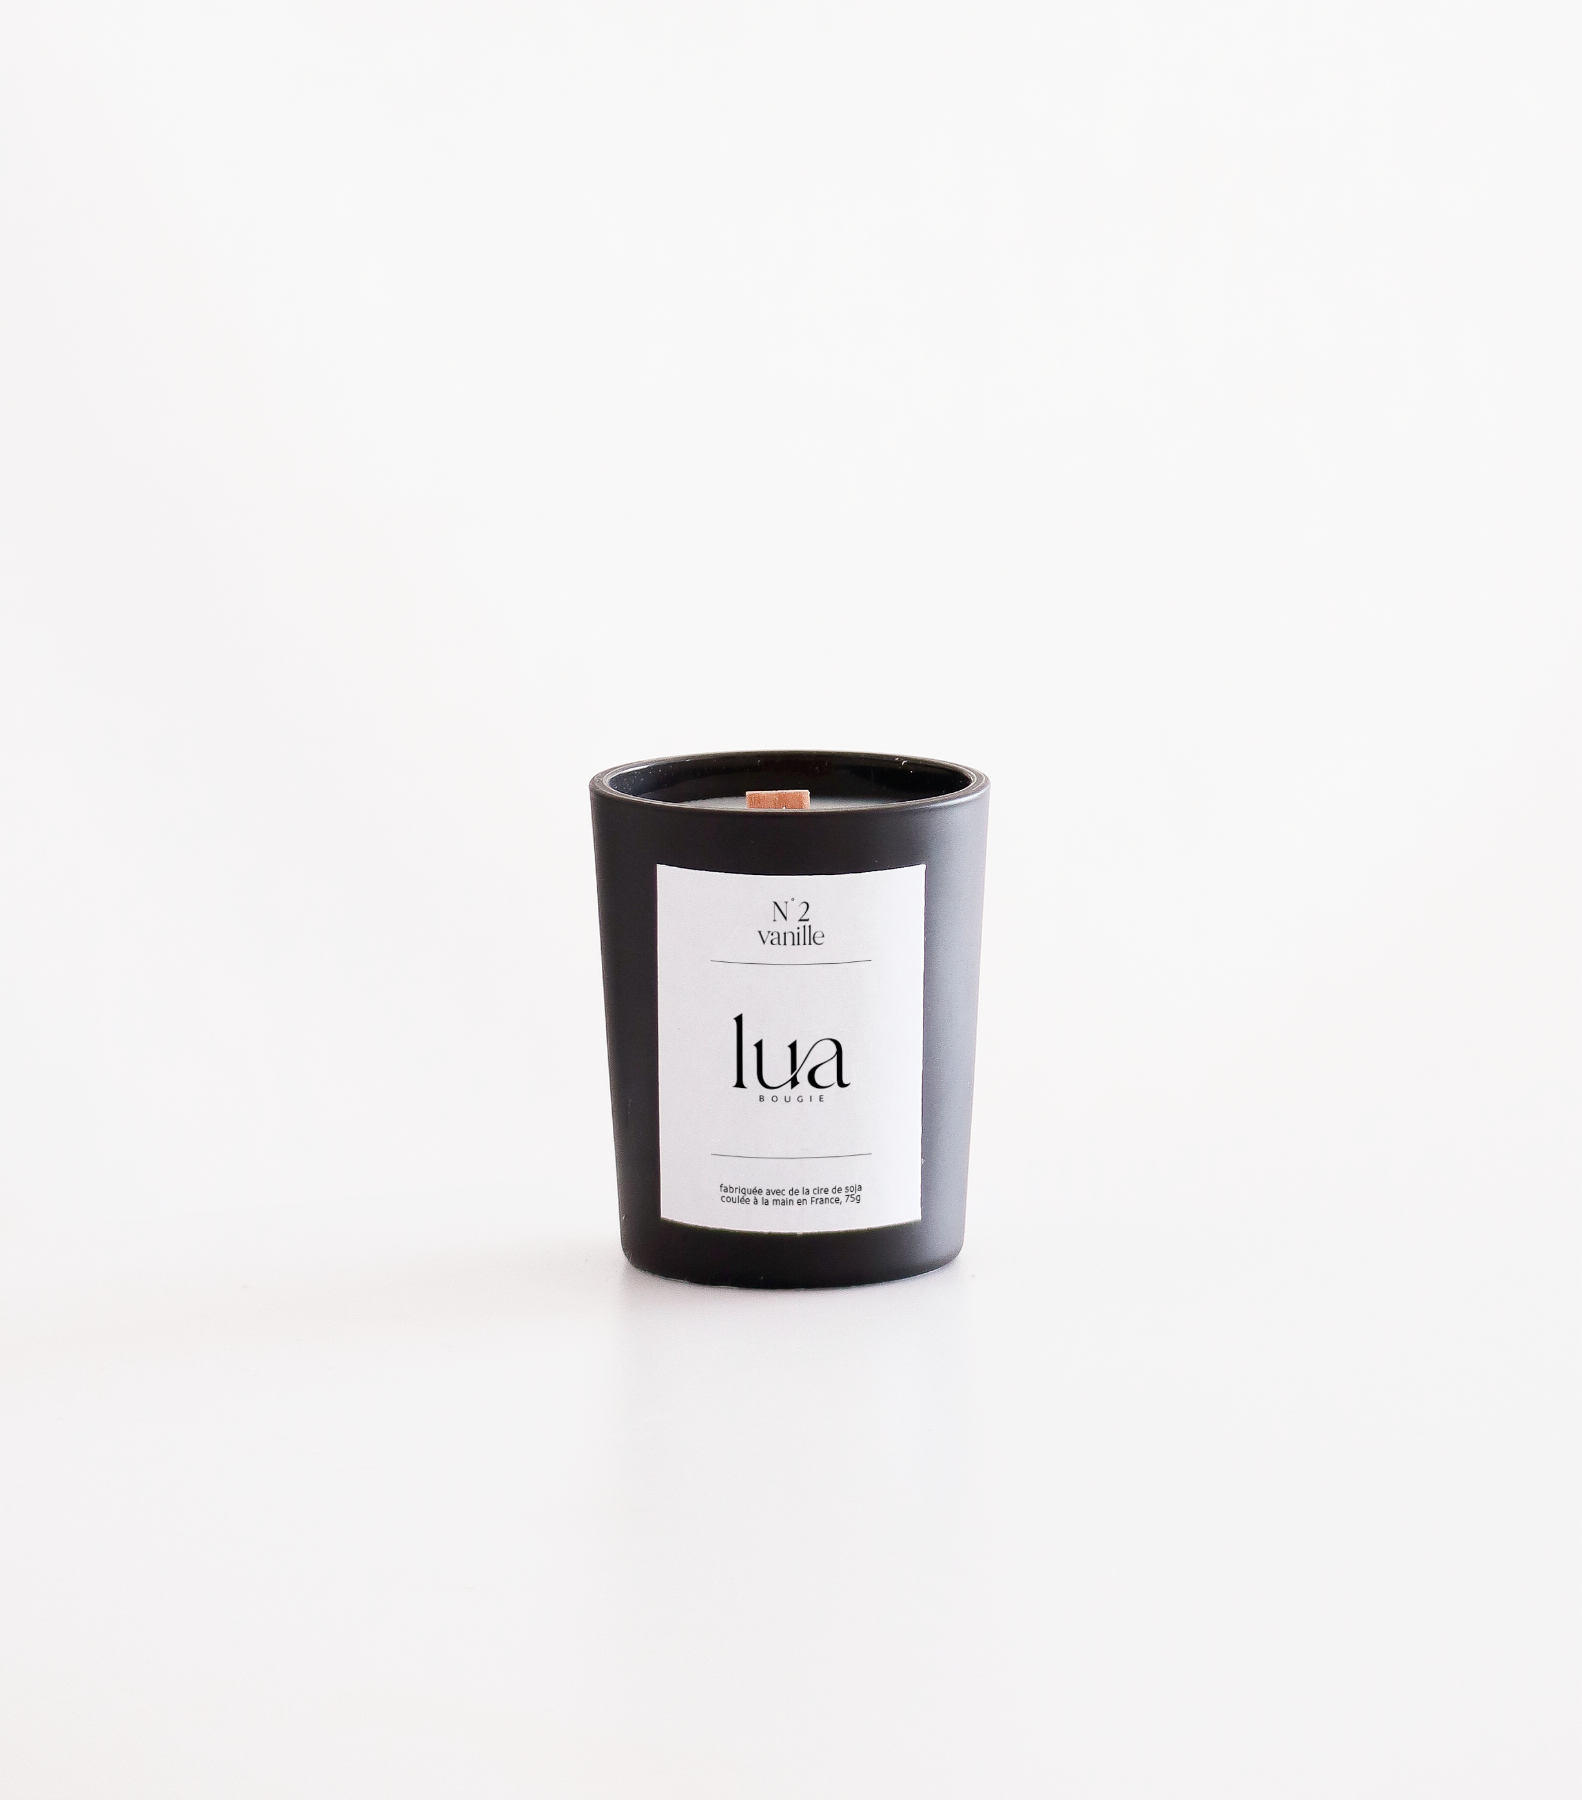 Bougie Lua parfumée et rechargeable, parfum vanille, contenant noir, 75g. 